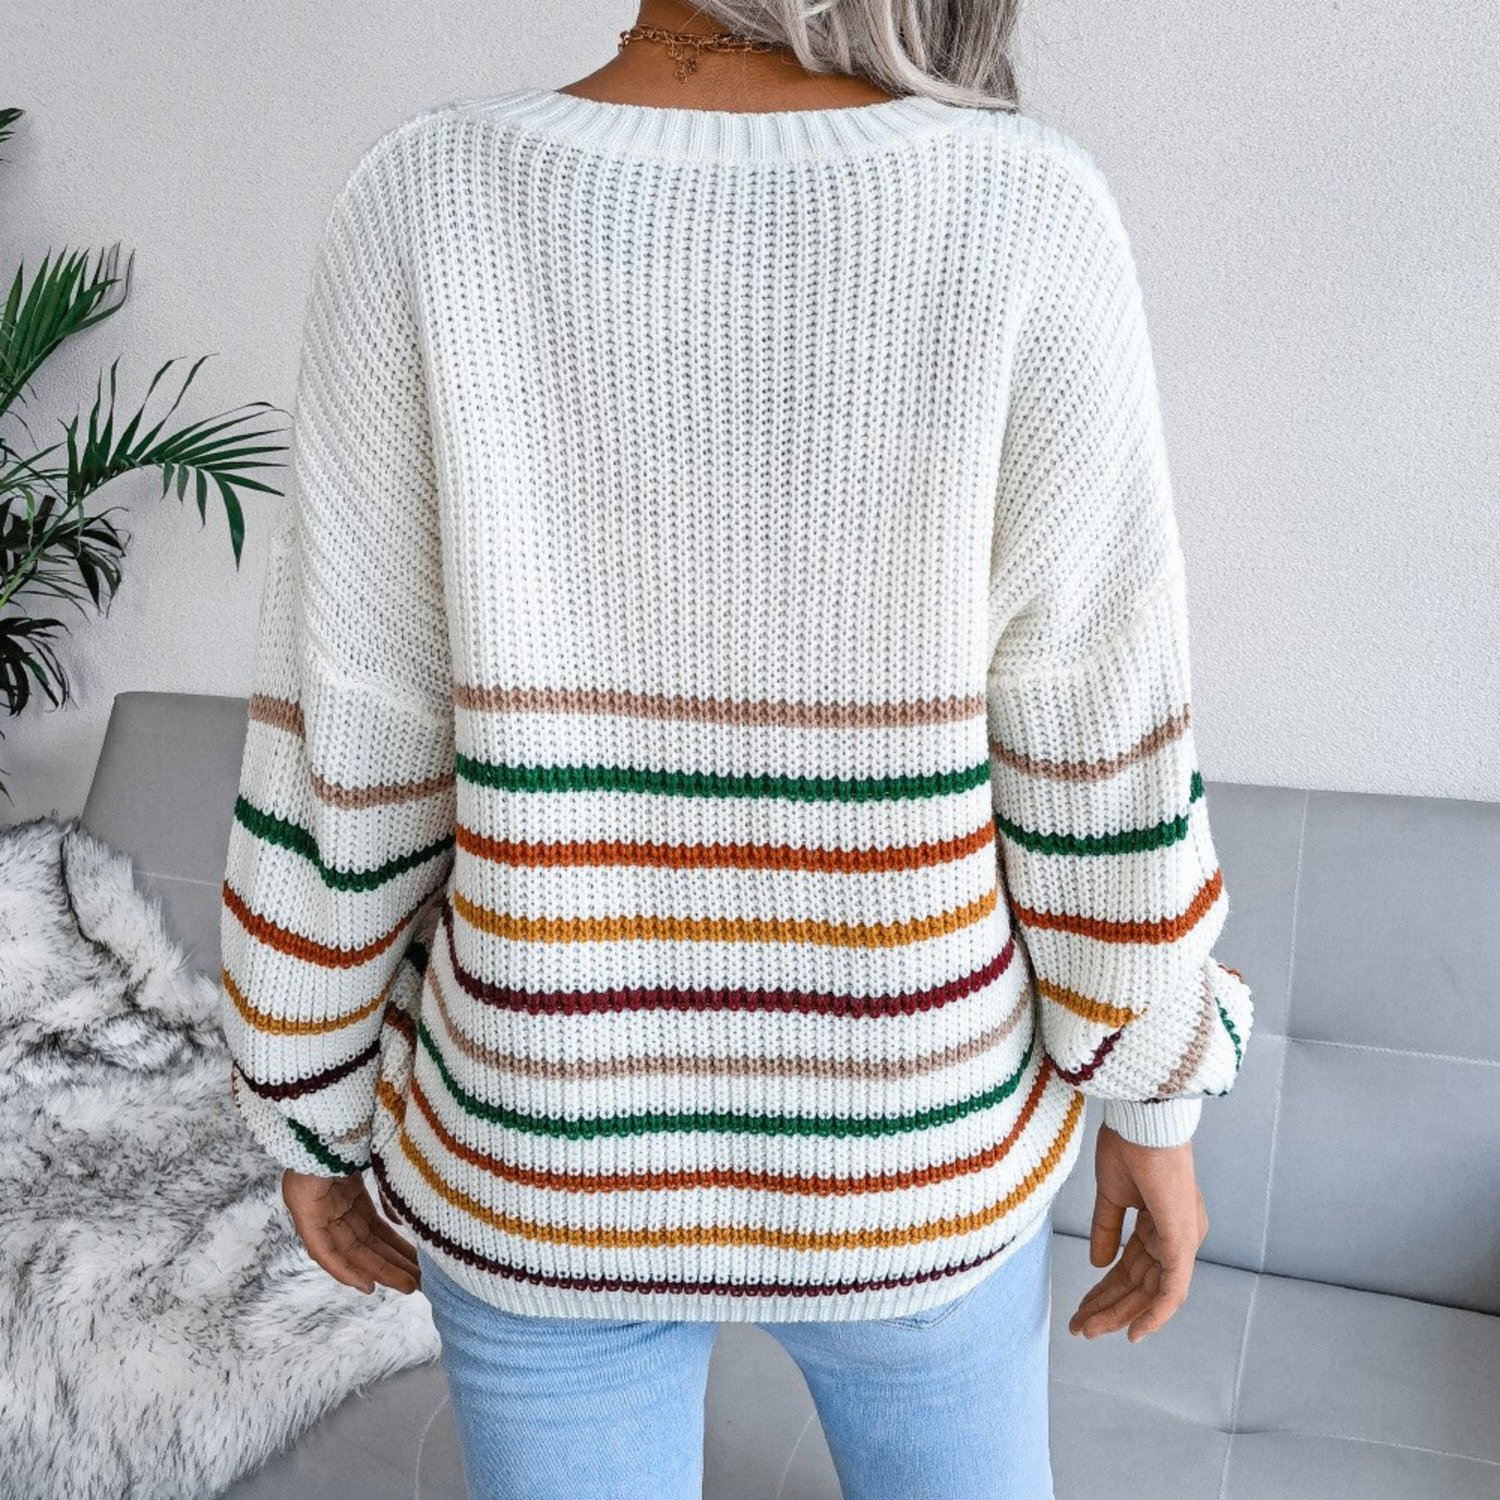 Girl weaing white striped v neck top sweater